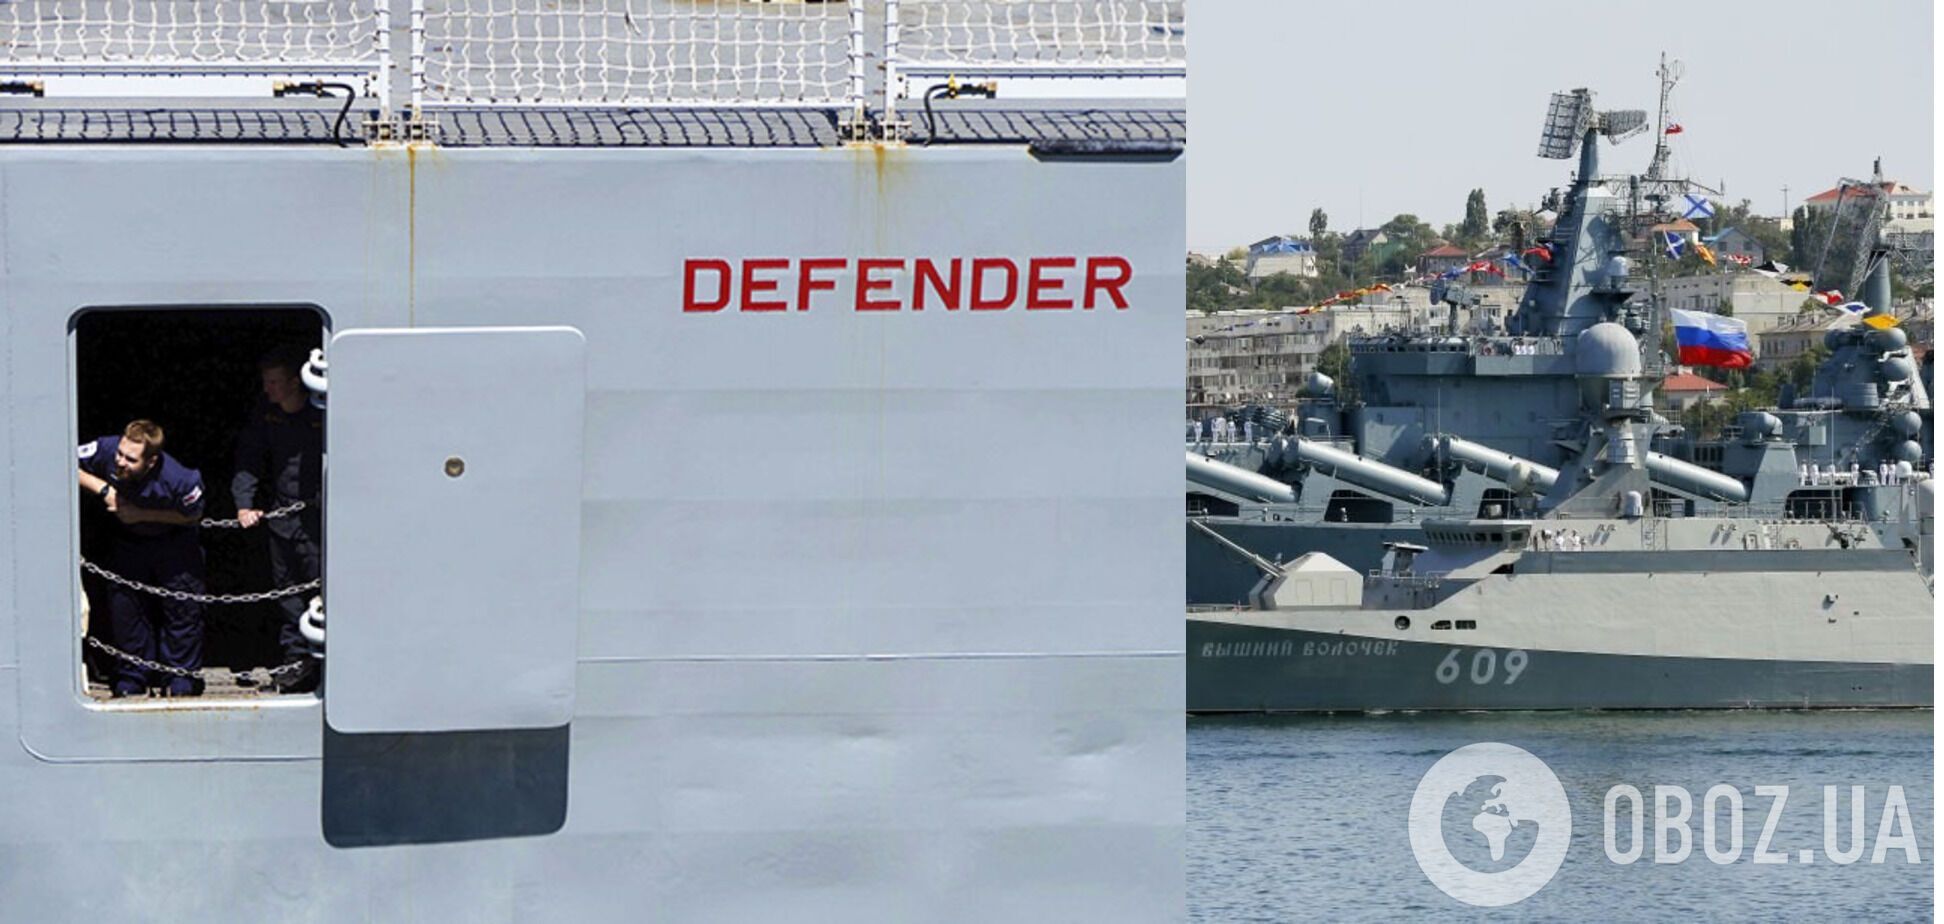 ЧФ и пограничники России обстреляли британский эсминец "Дефендер"